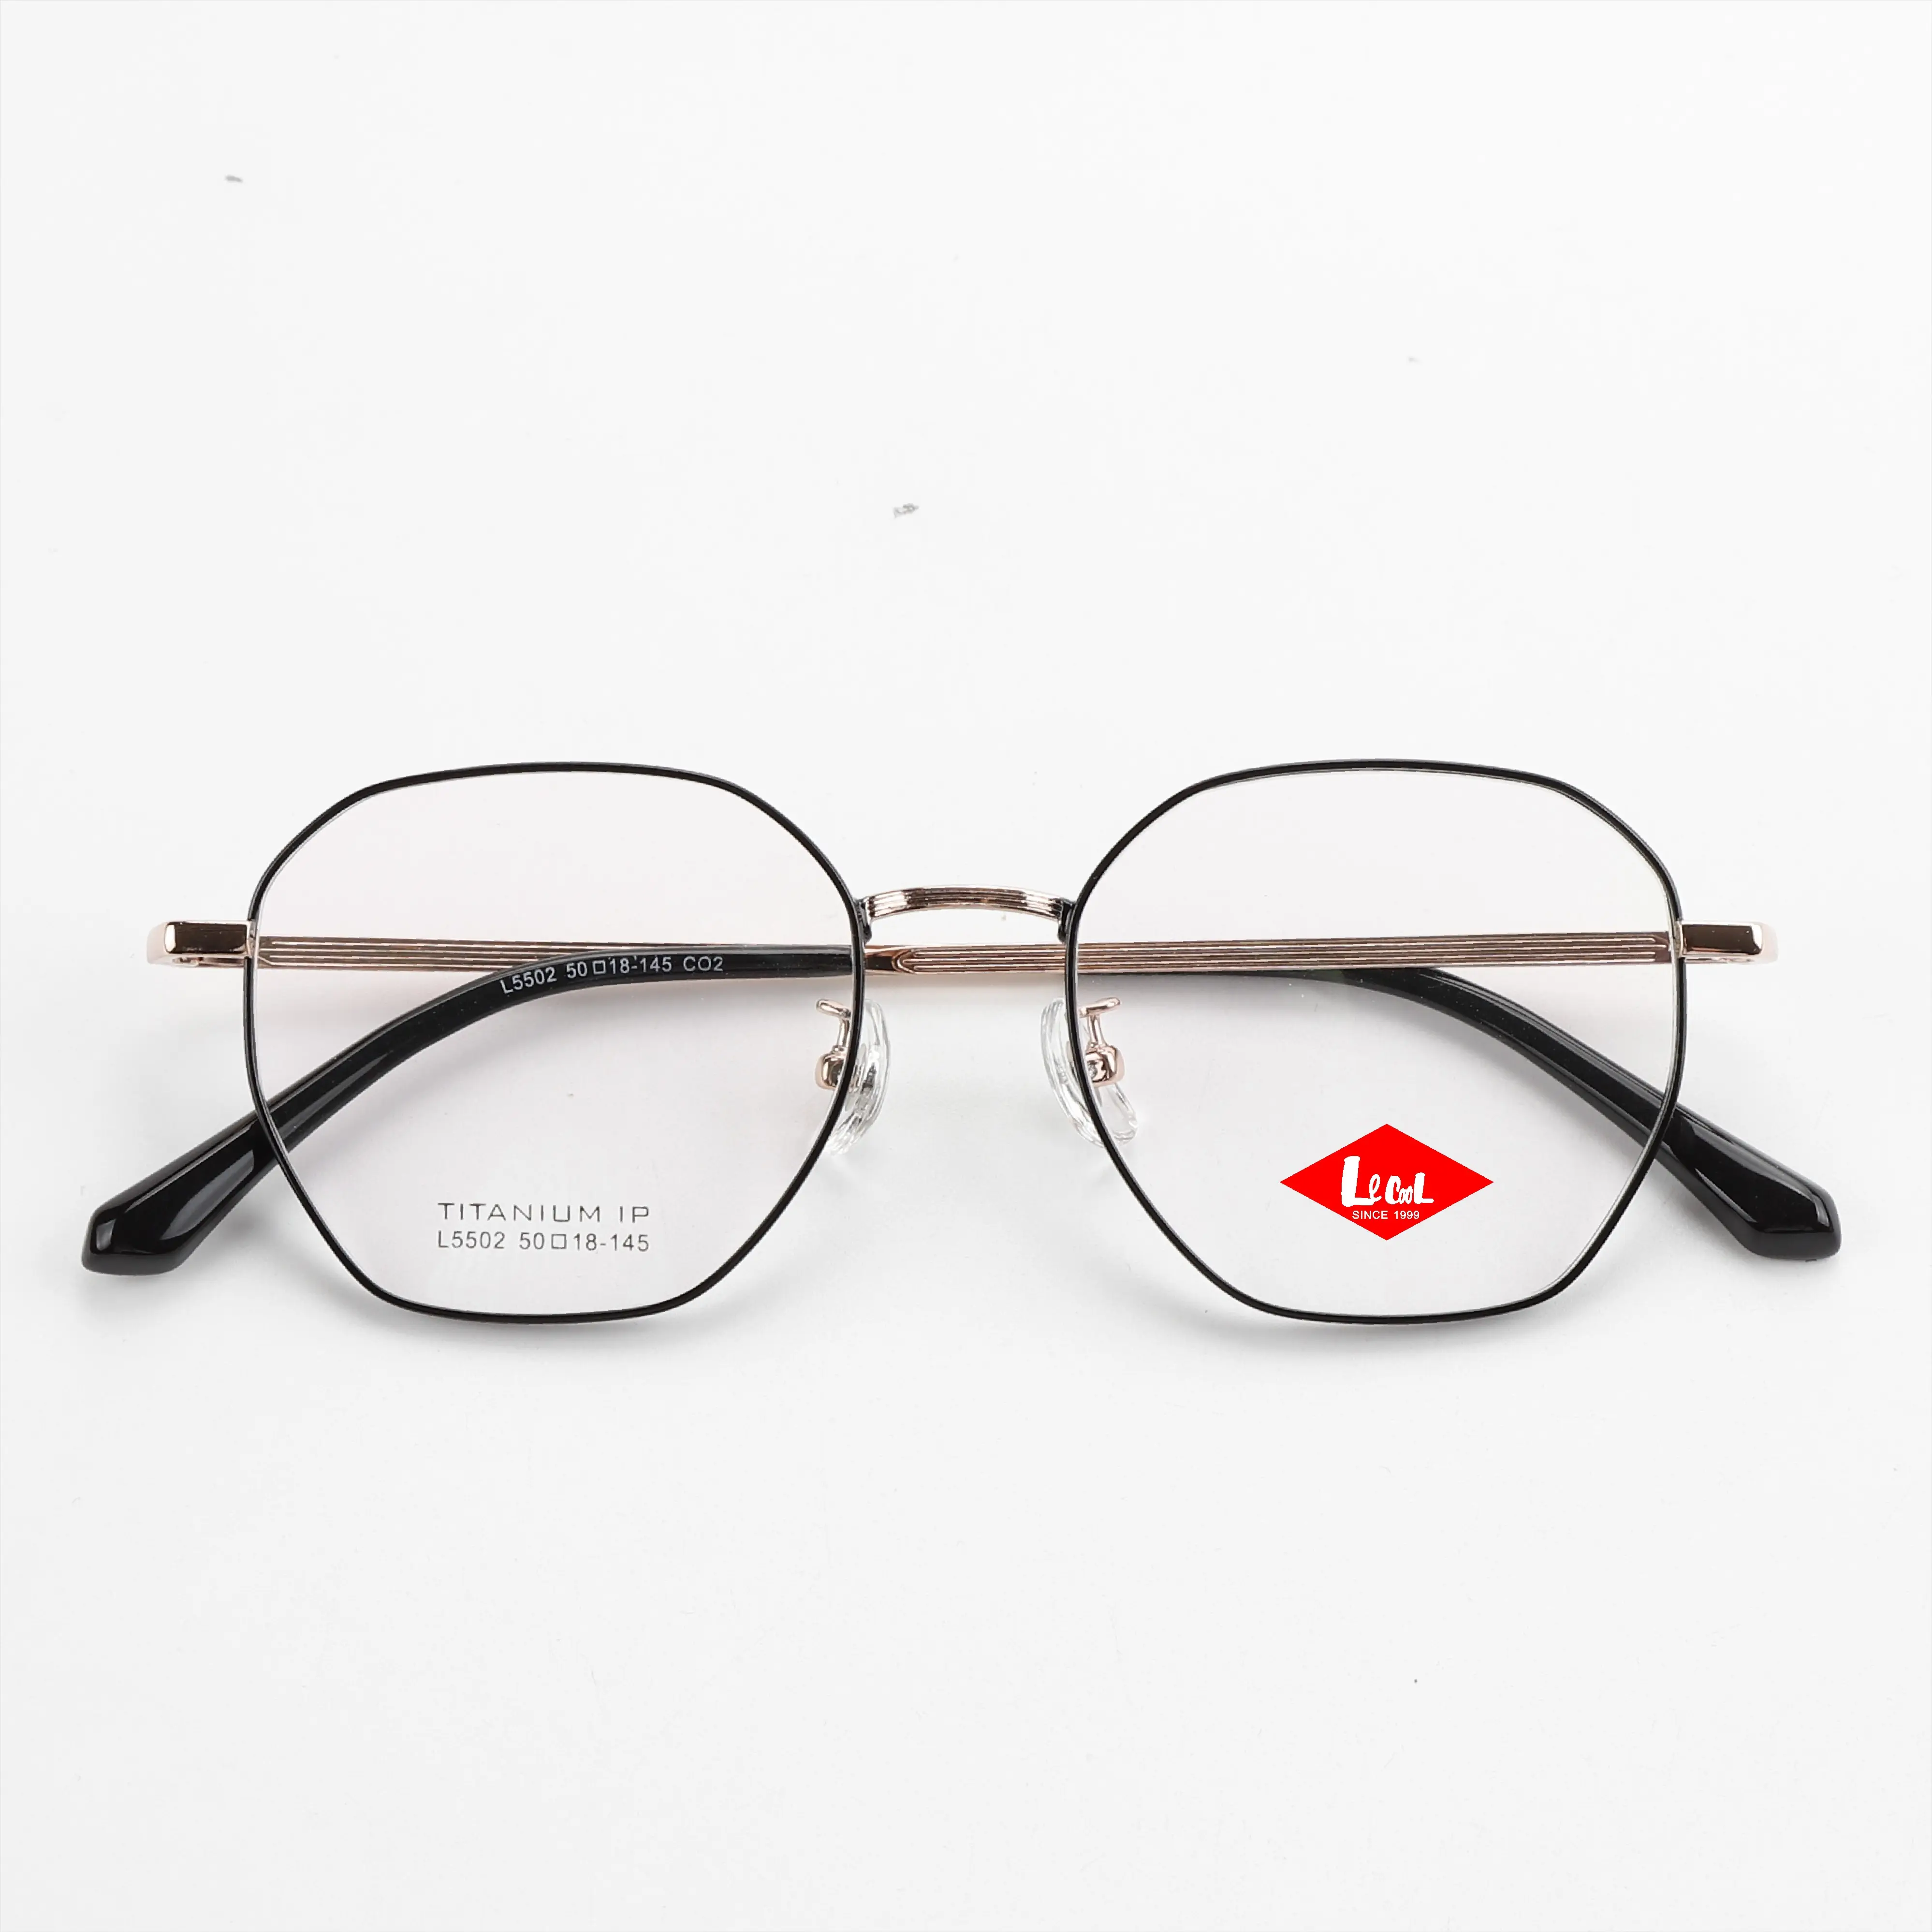 Montatura da vista in titanio puro Unisex leggero di alta qualità montature per occhiali importate montature per occhiali di lusso da uomo occhiali coreani